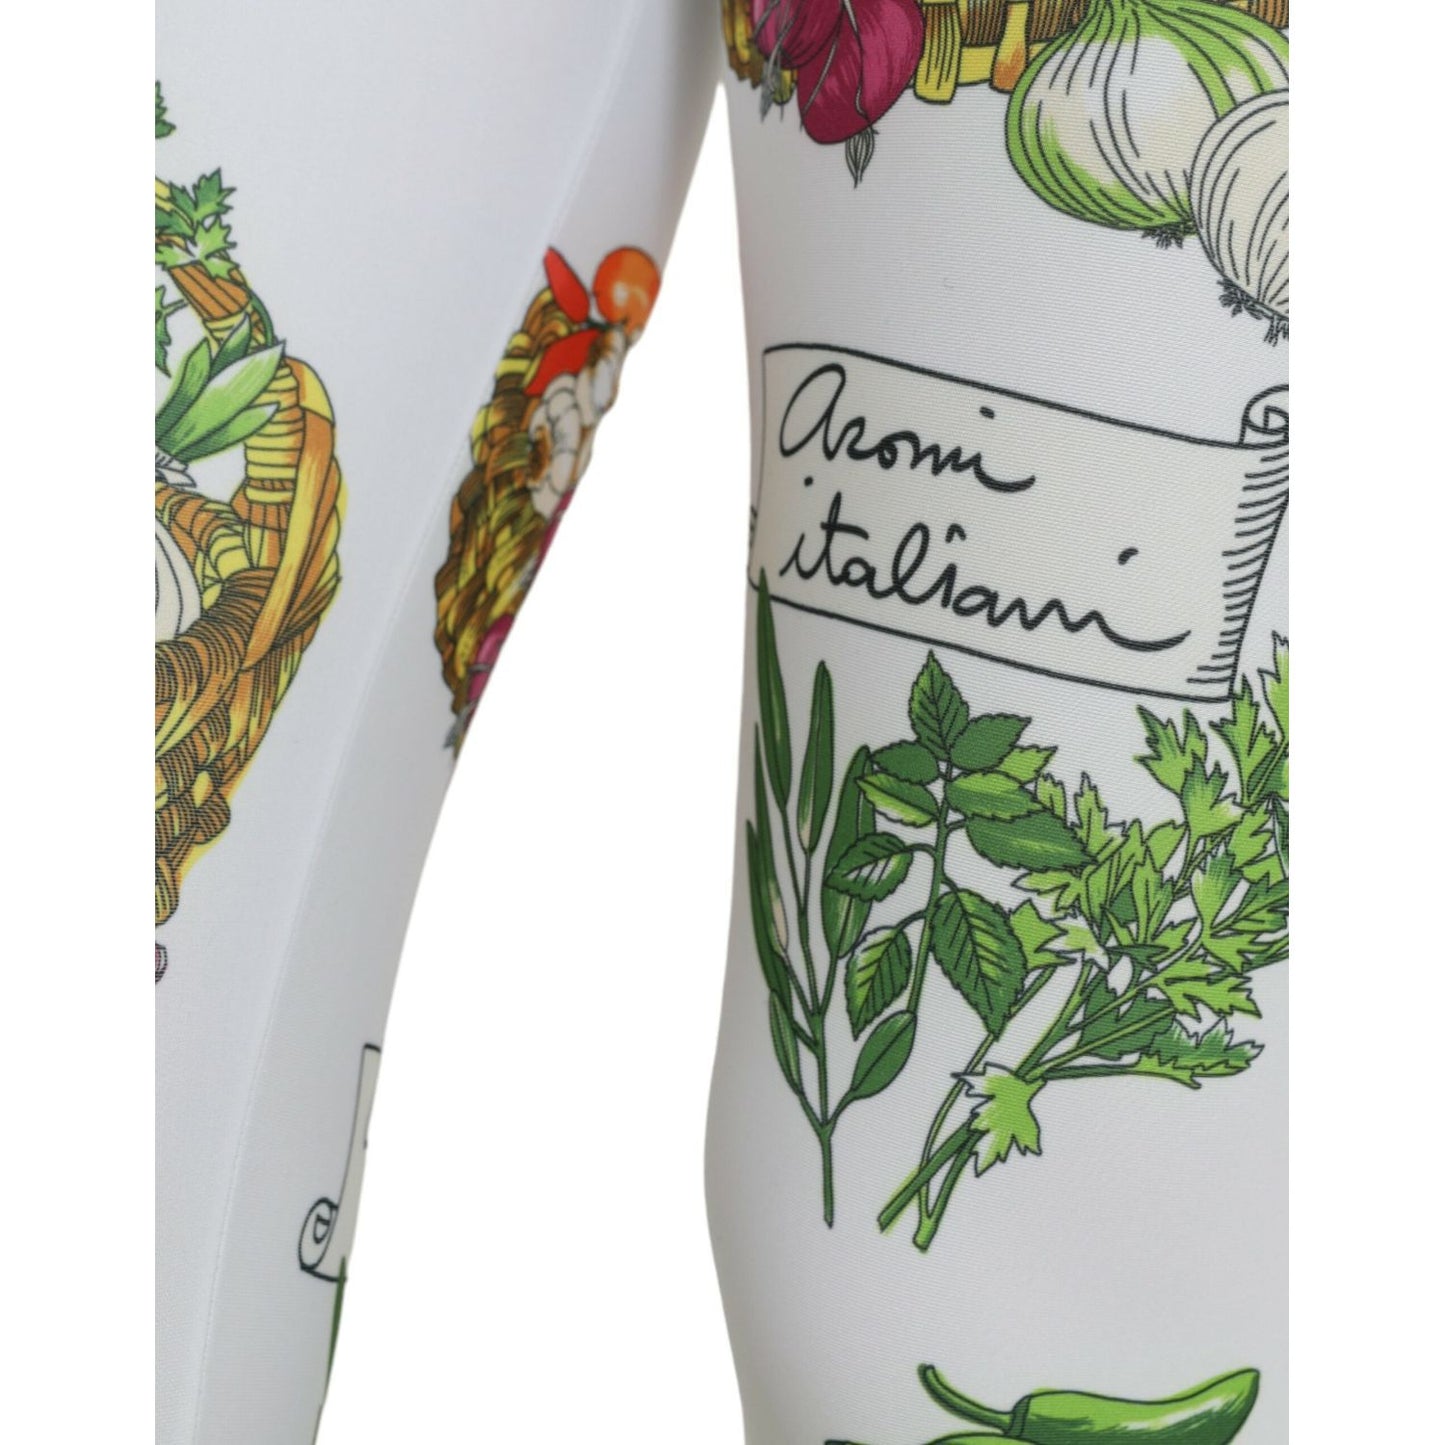 Dolce & Gabbana Elegant High Waist Printed Leggings white-vegetables-high-waist-leggings-pants